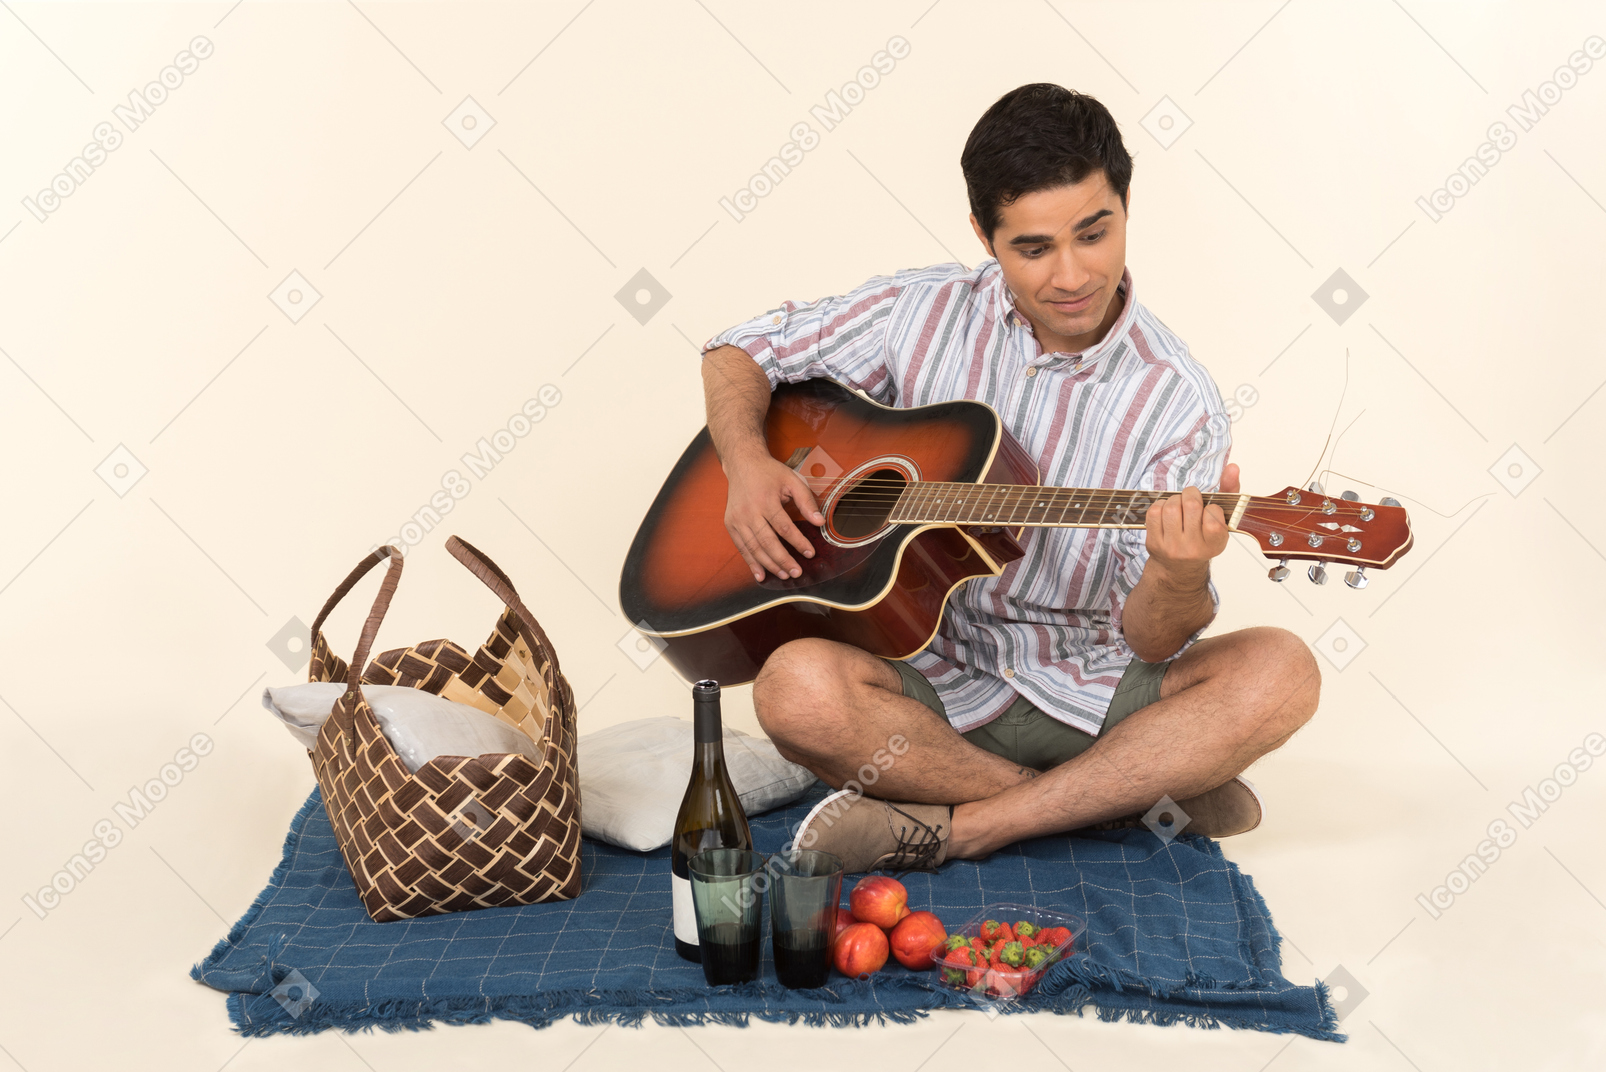 Junger kaukasischer kerl, der nahe picknickkorb auf der decke sitzt und gitarre spielt